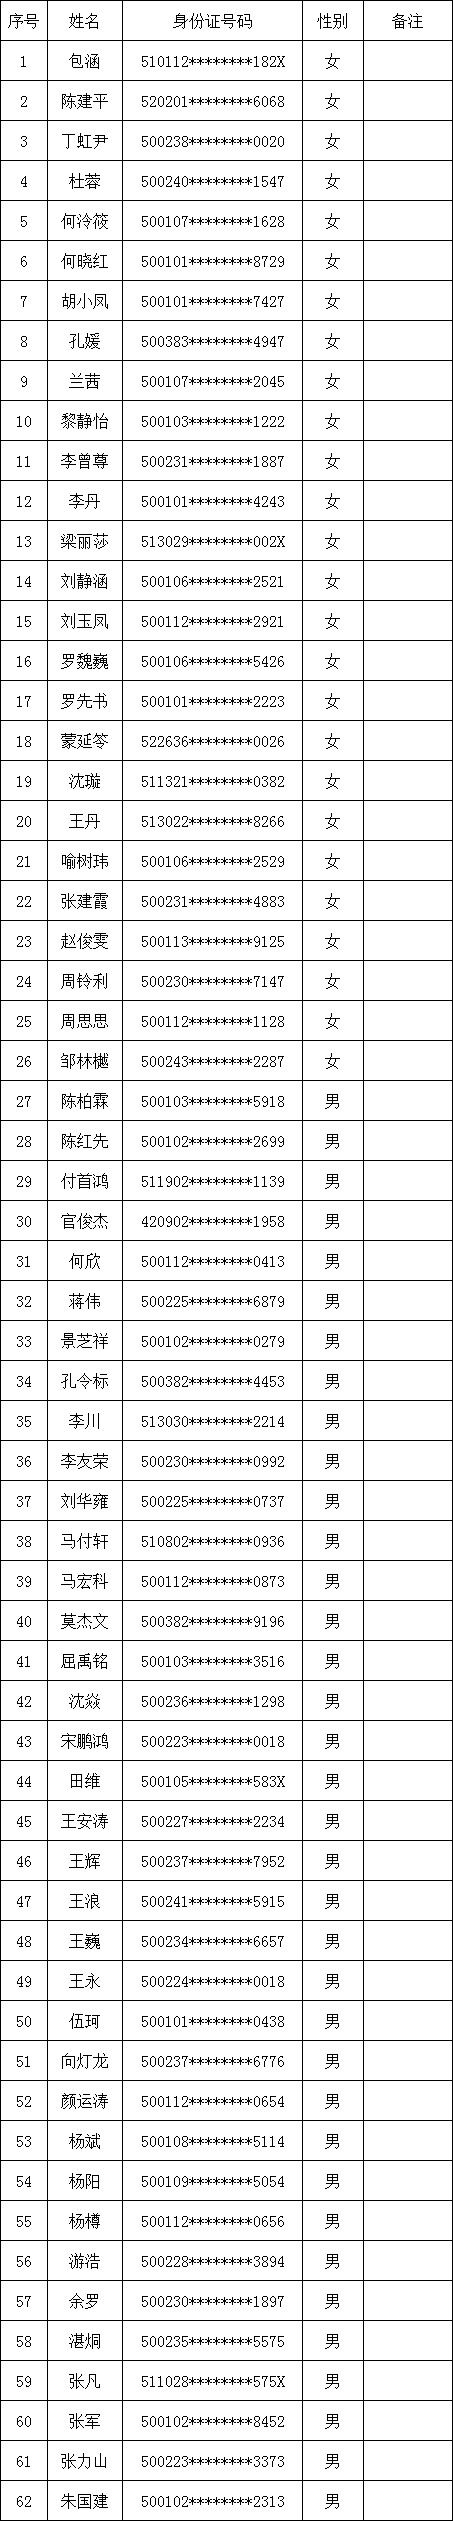 2021年两江新区公安分局辅警招聘资格审查名单